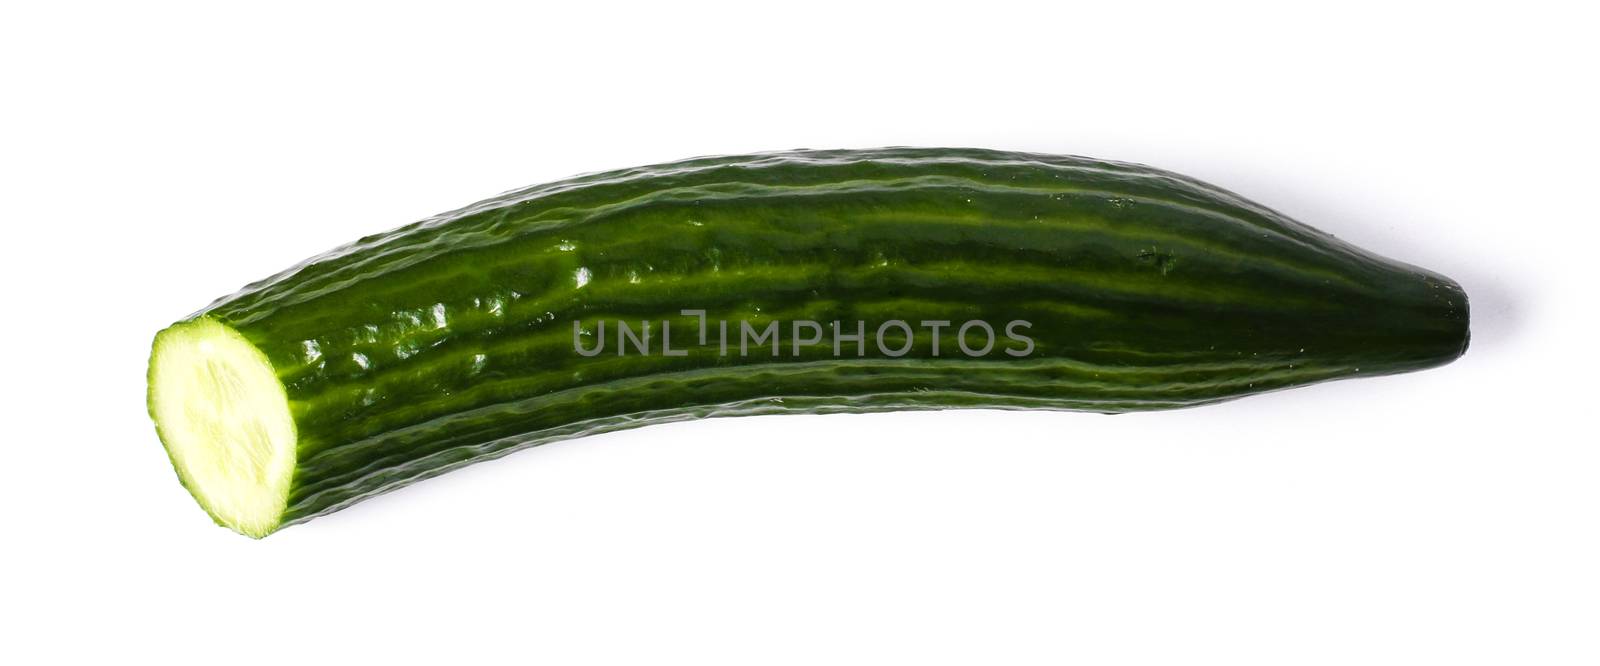 Green cucumber by rufatjumali